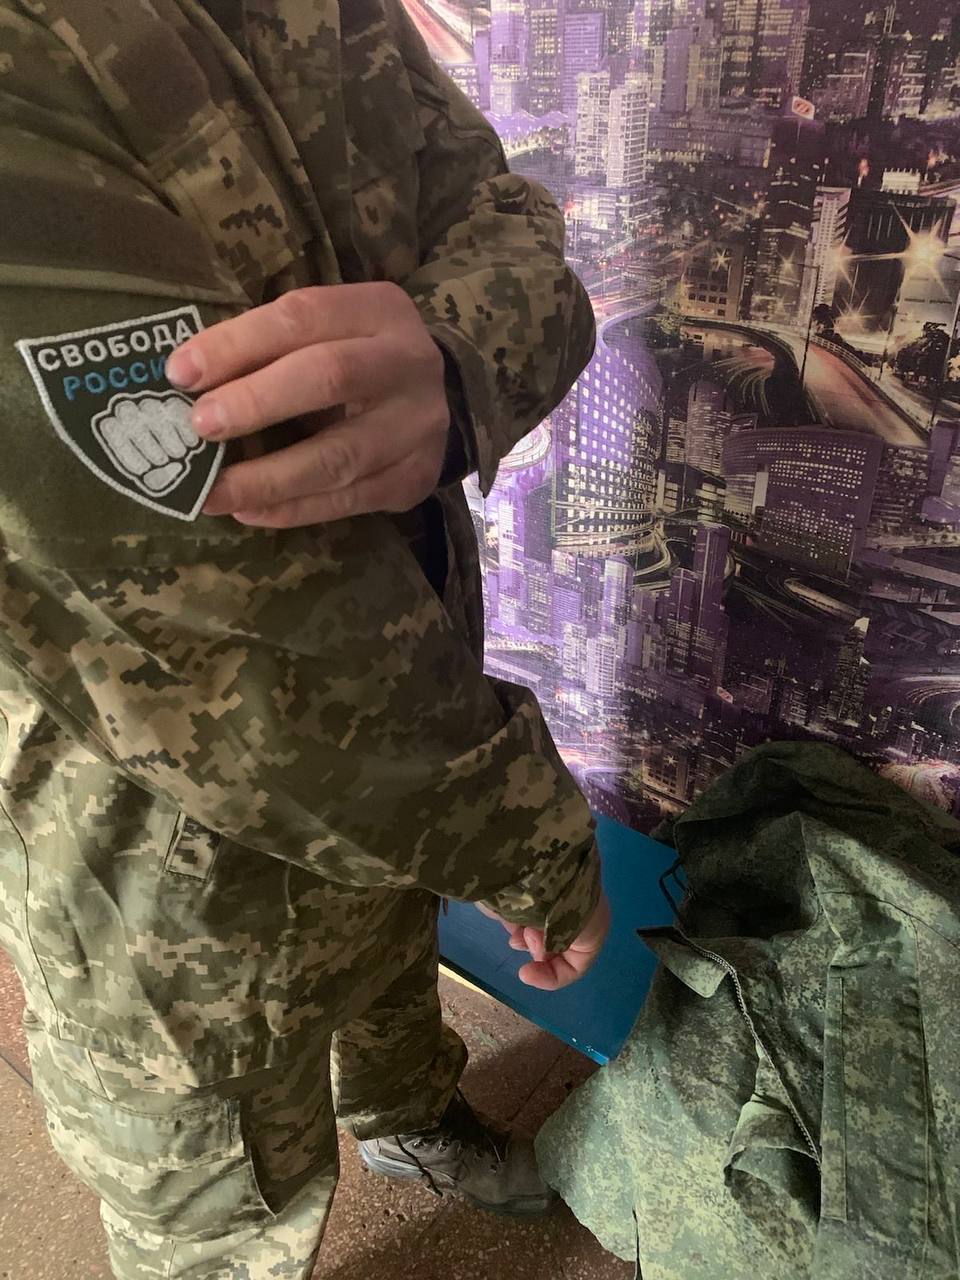 "Мы будем воевать против режима Путина": граждане РФ, которые защищают Украину, получили шевроны со знаковой надписью. Фото